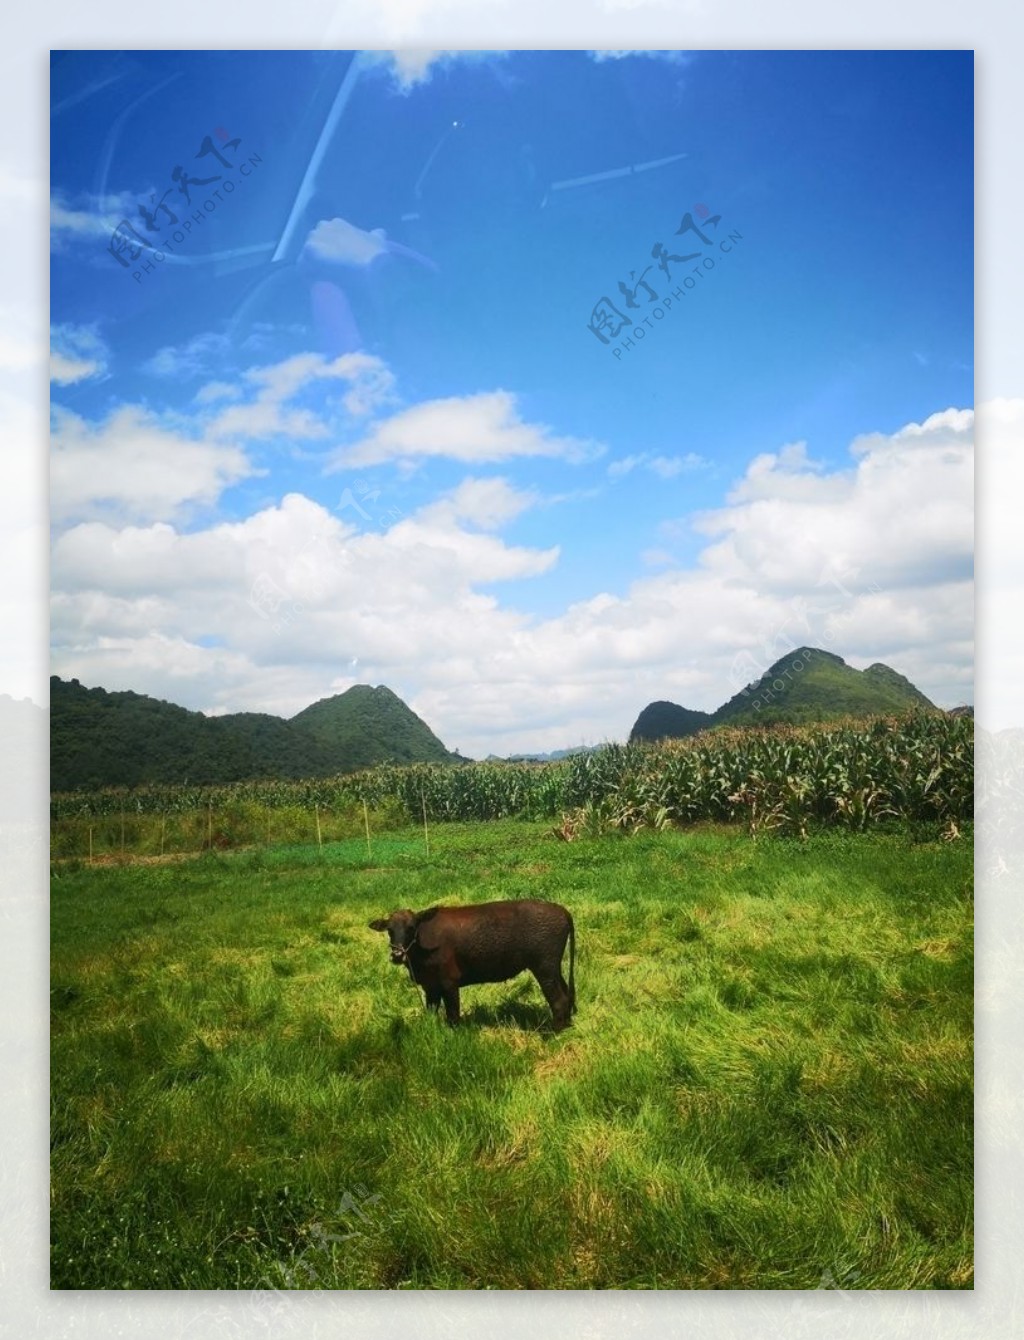 牛儿在山坡上吃草